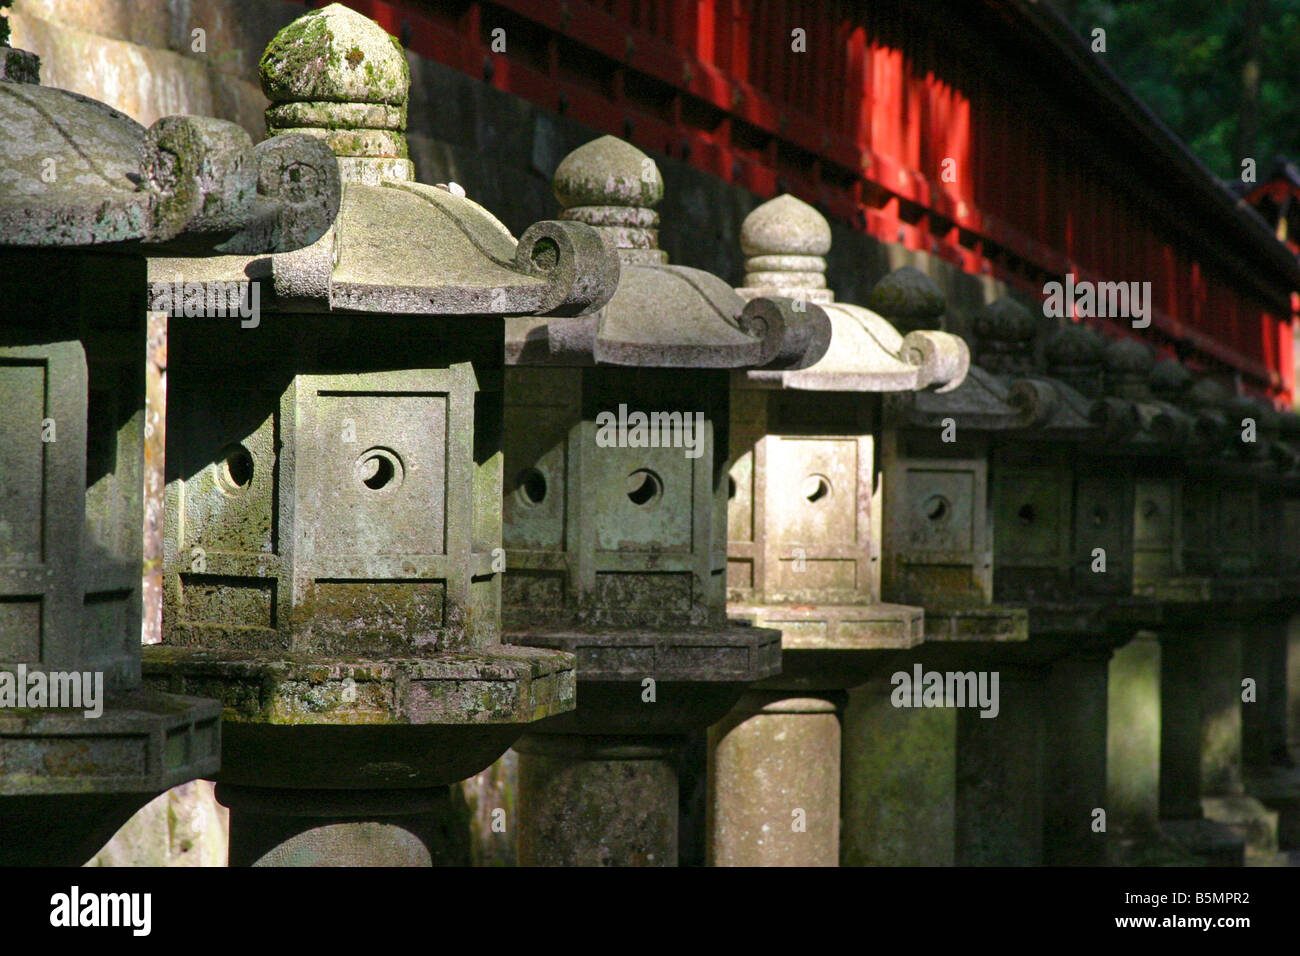 A Row of Stone Garden Lanterns at Nikko Toshogu Shrine Nikko Tochigi Japan Stock Photo